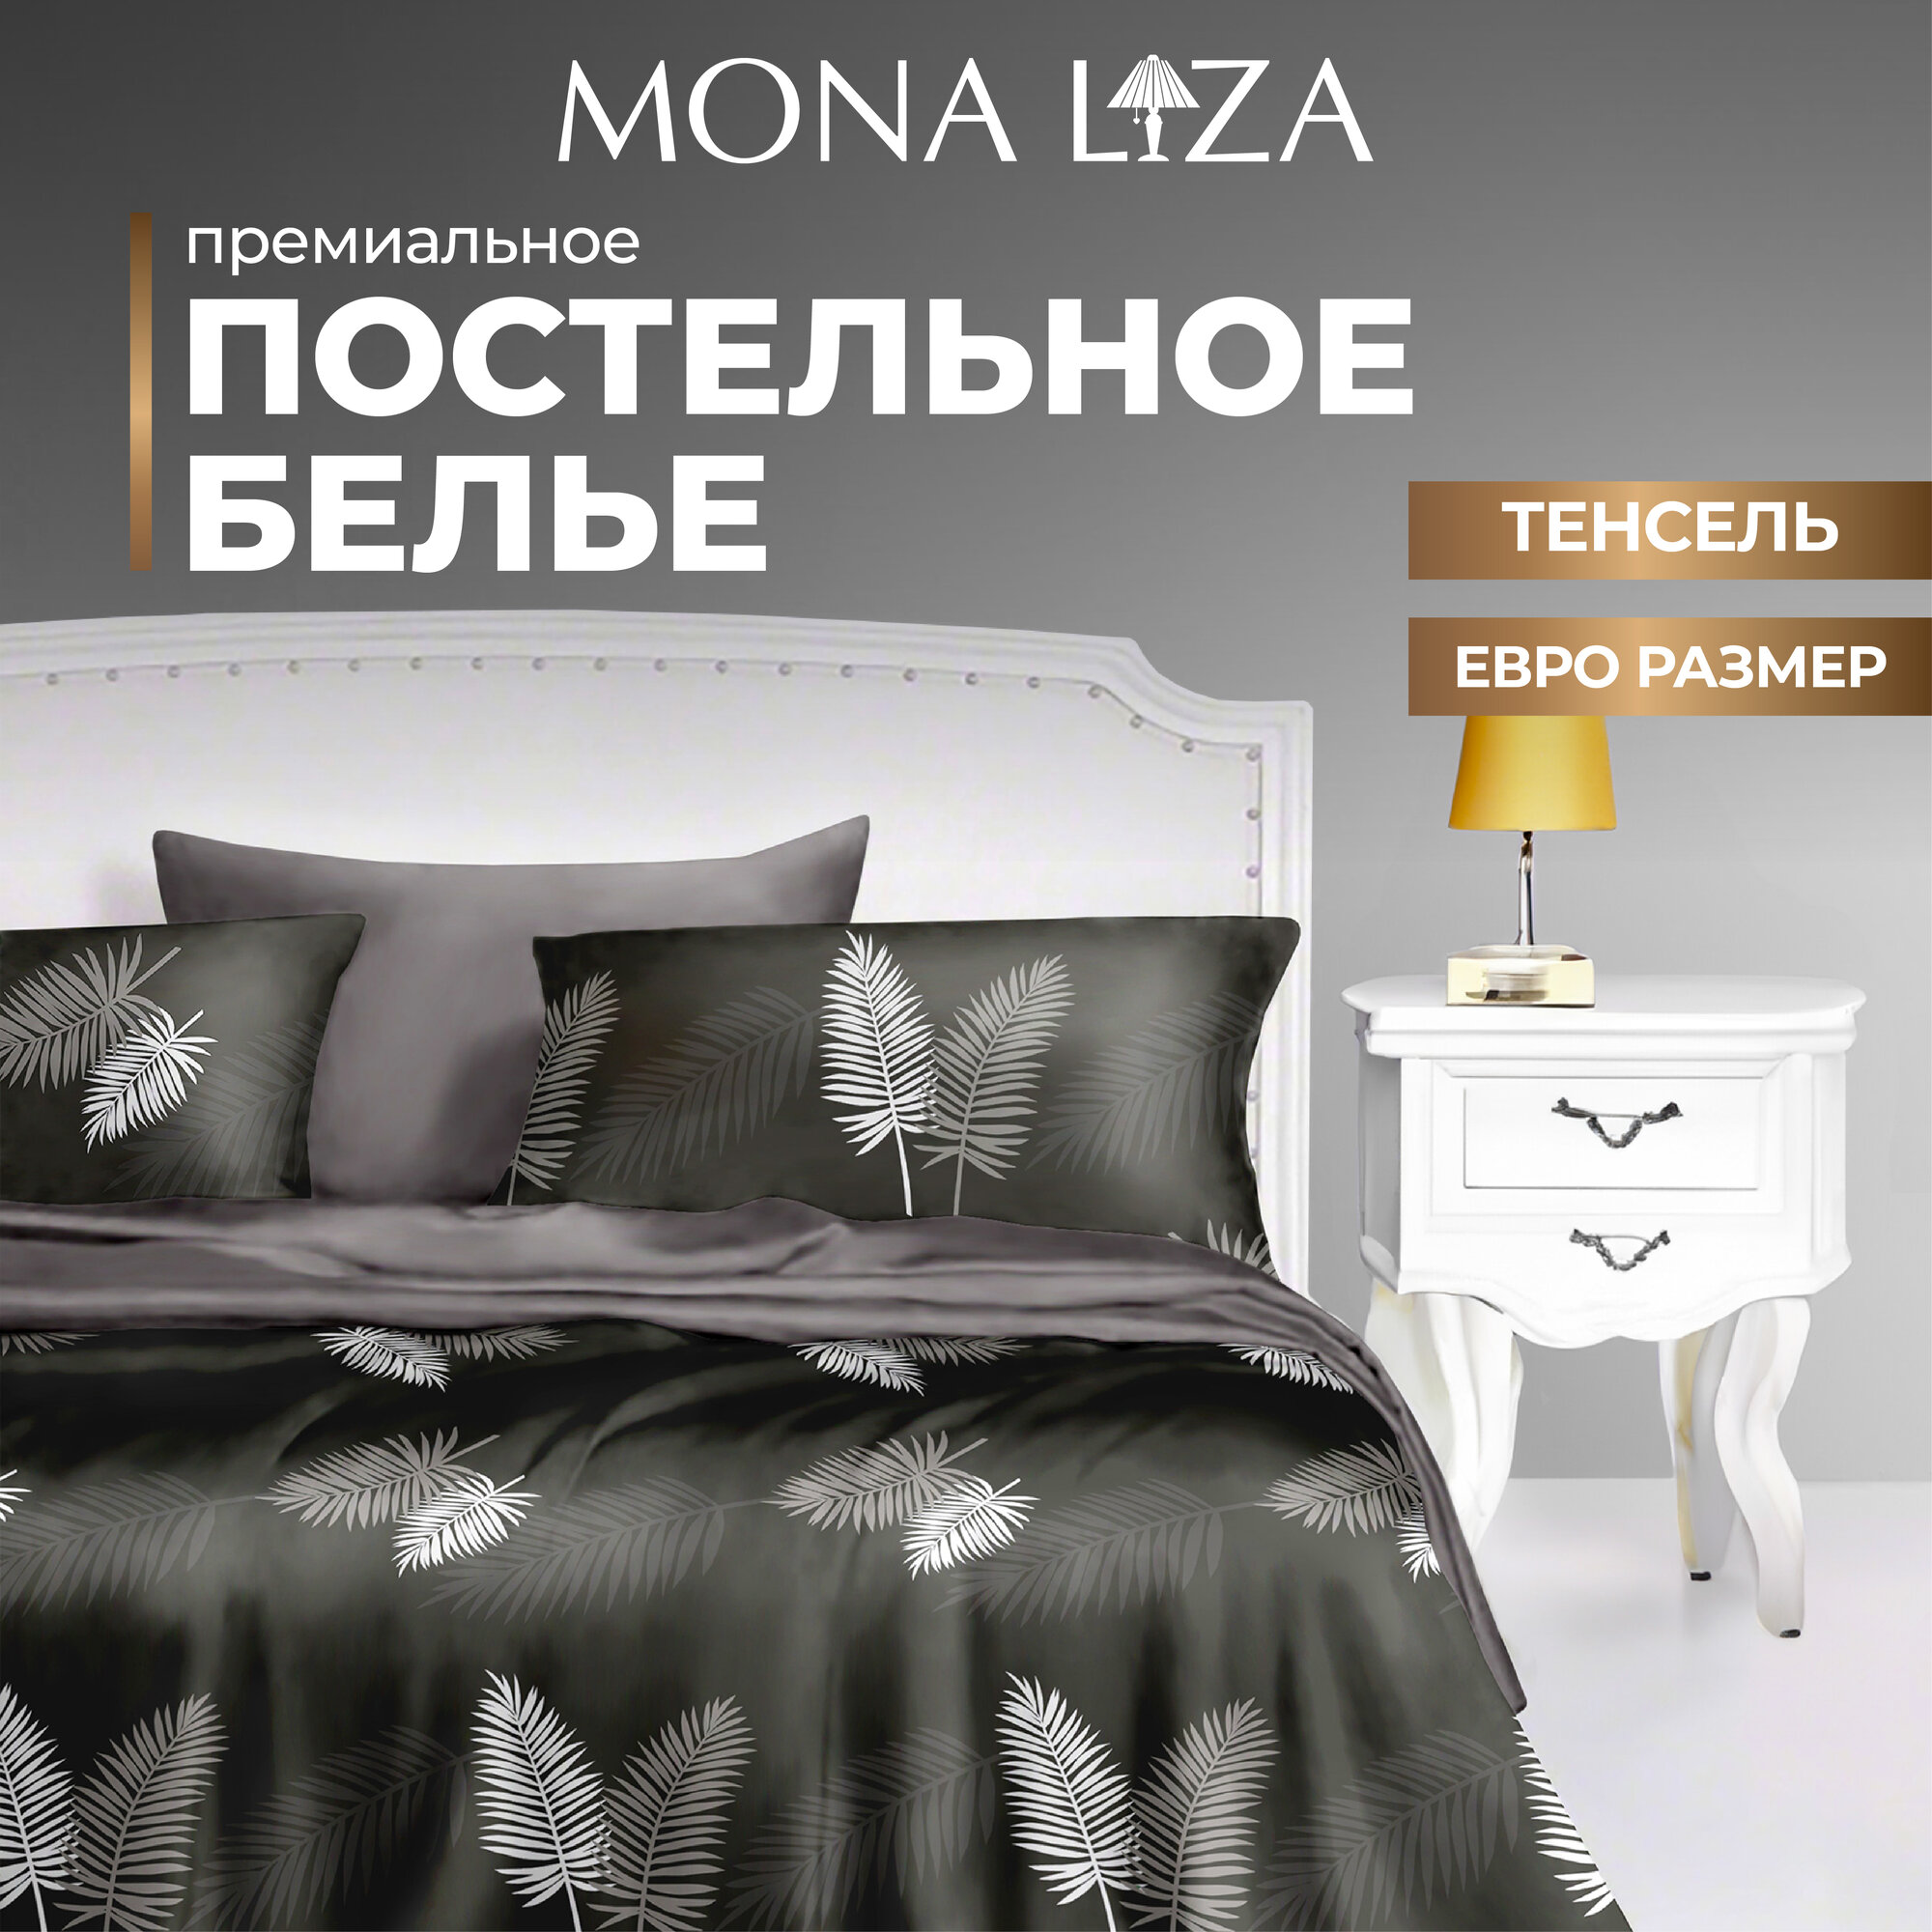 Комплект постельного белья 2 спальный Mona Liza Premium 